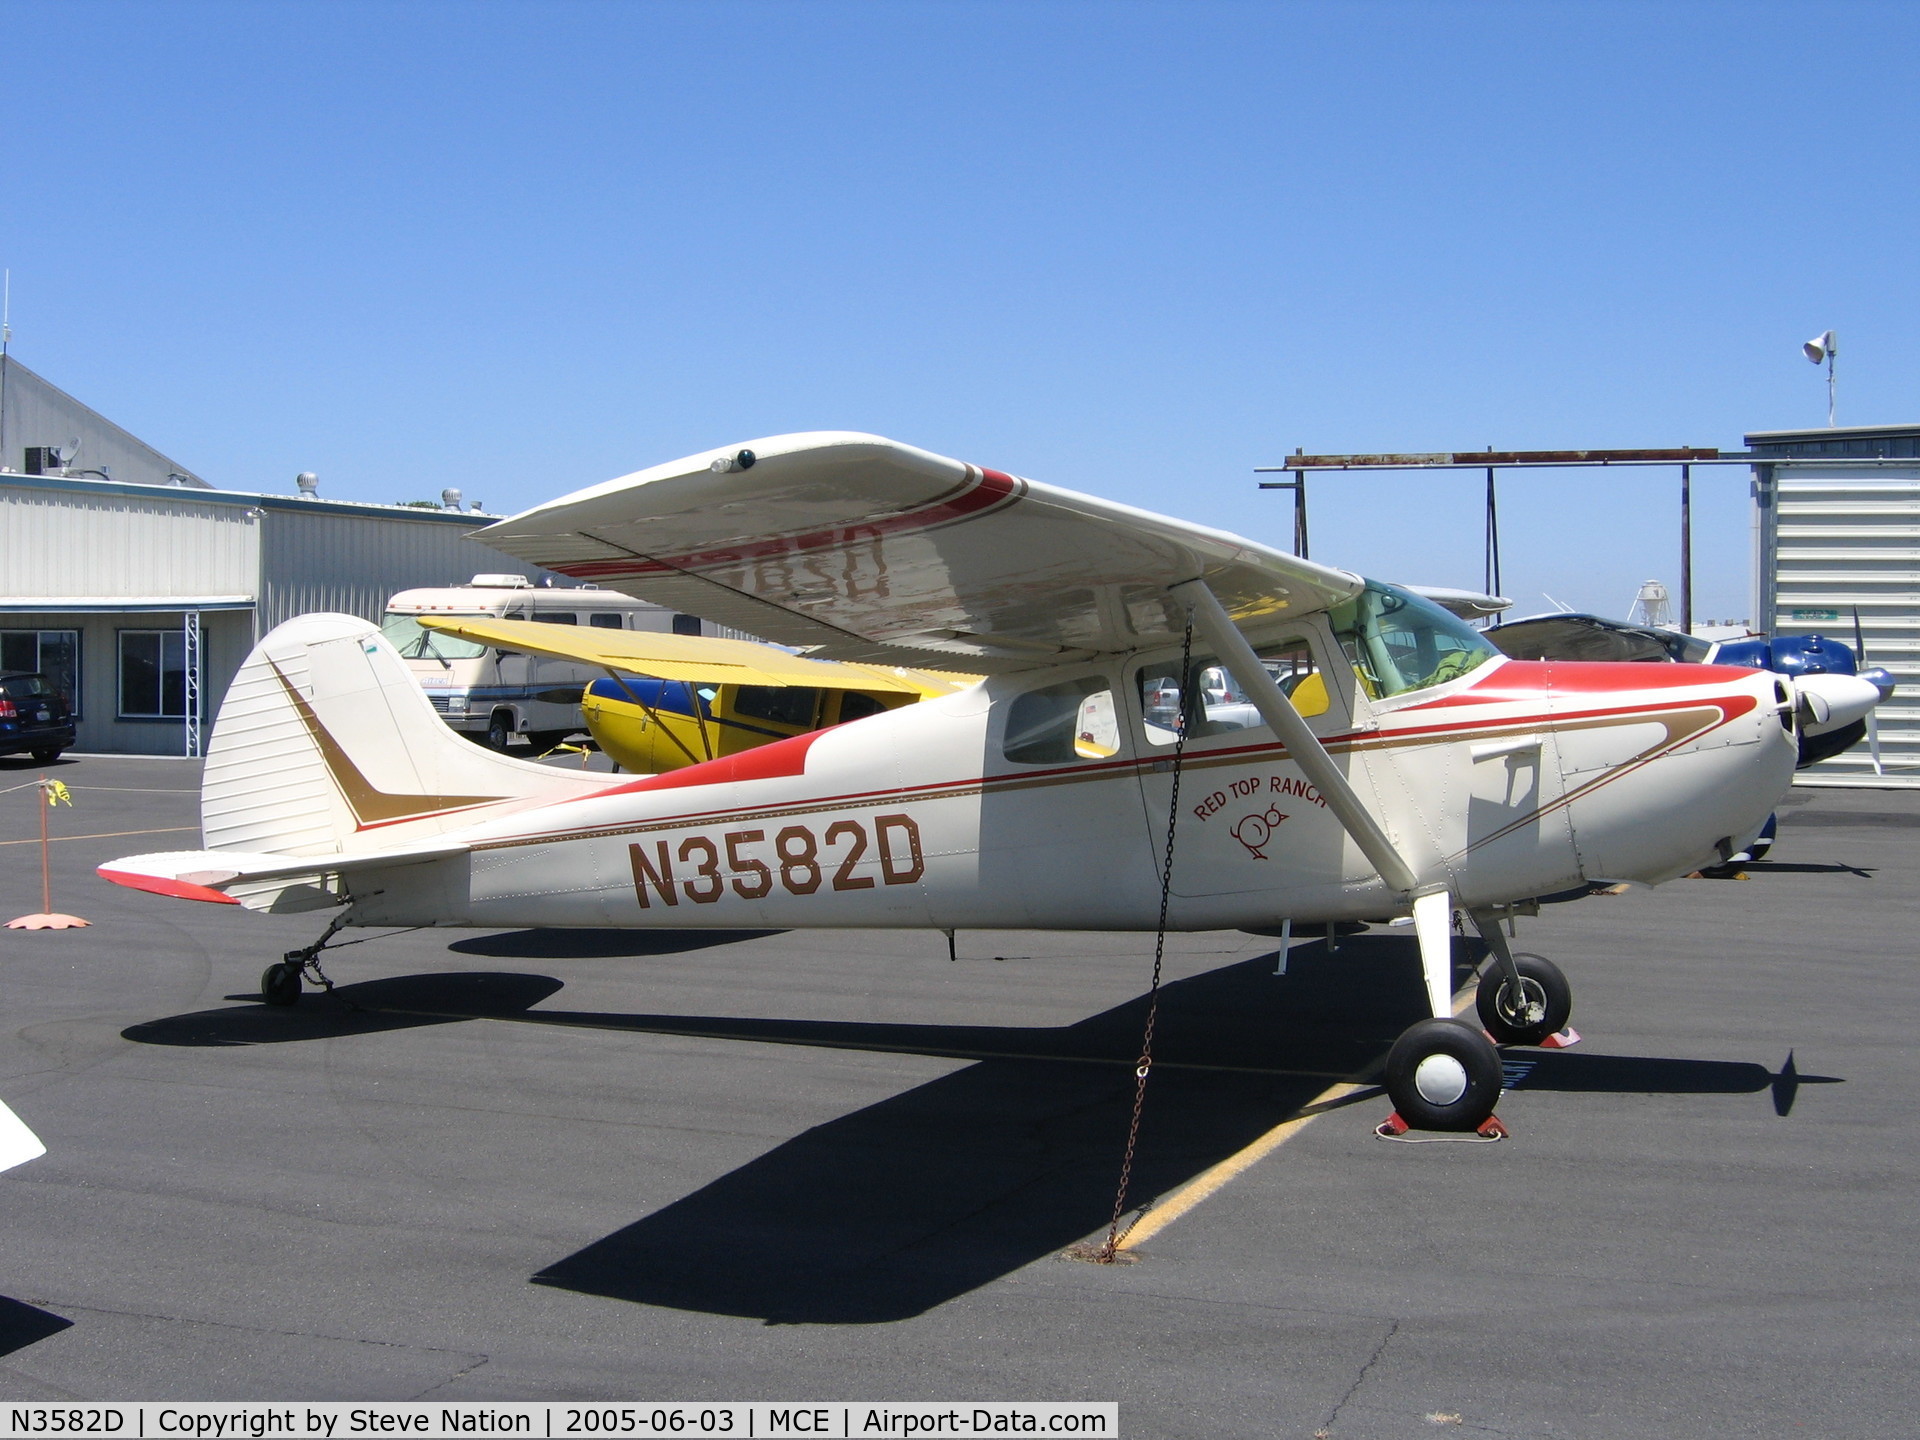 N3582D, 1956 Cessna 170B C/N 27125, Red Top Ranch (Gail McCullough) 1956 Cessna 170B at Merced,CA